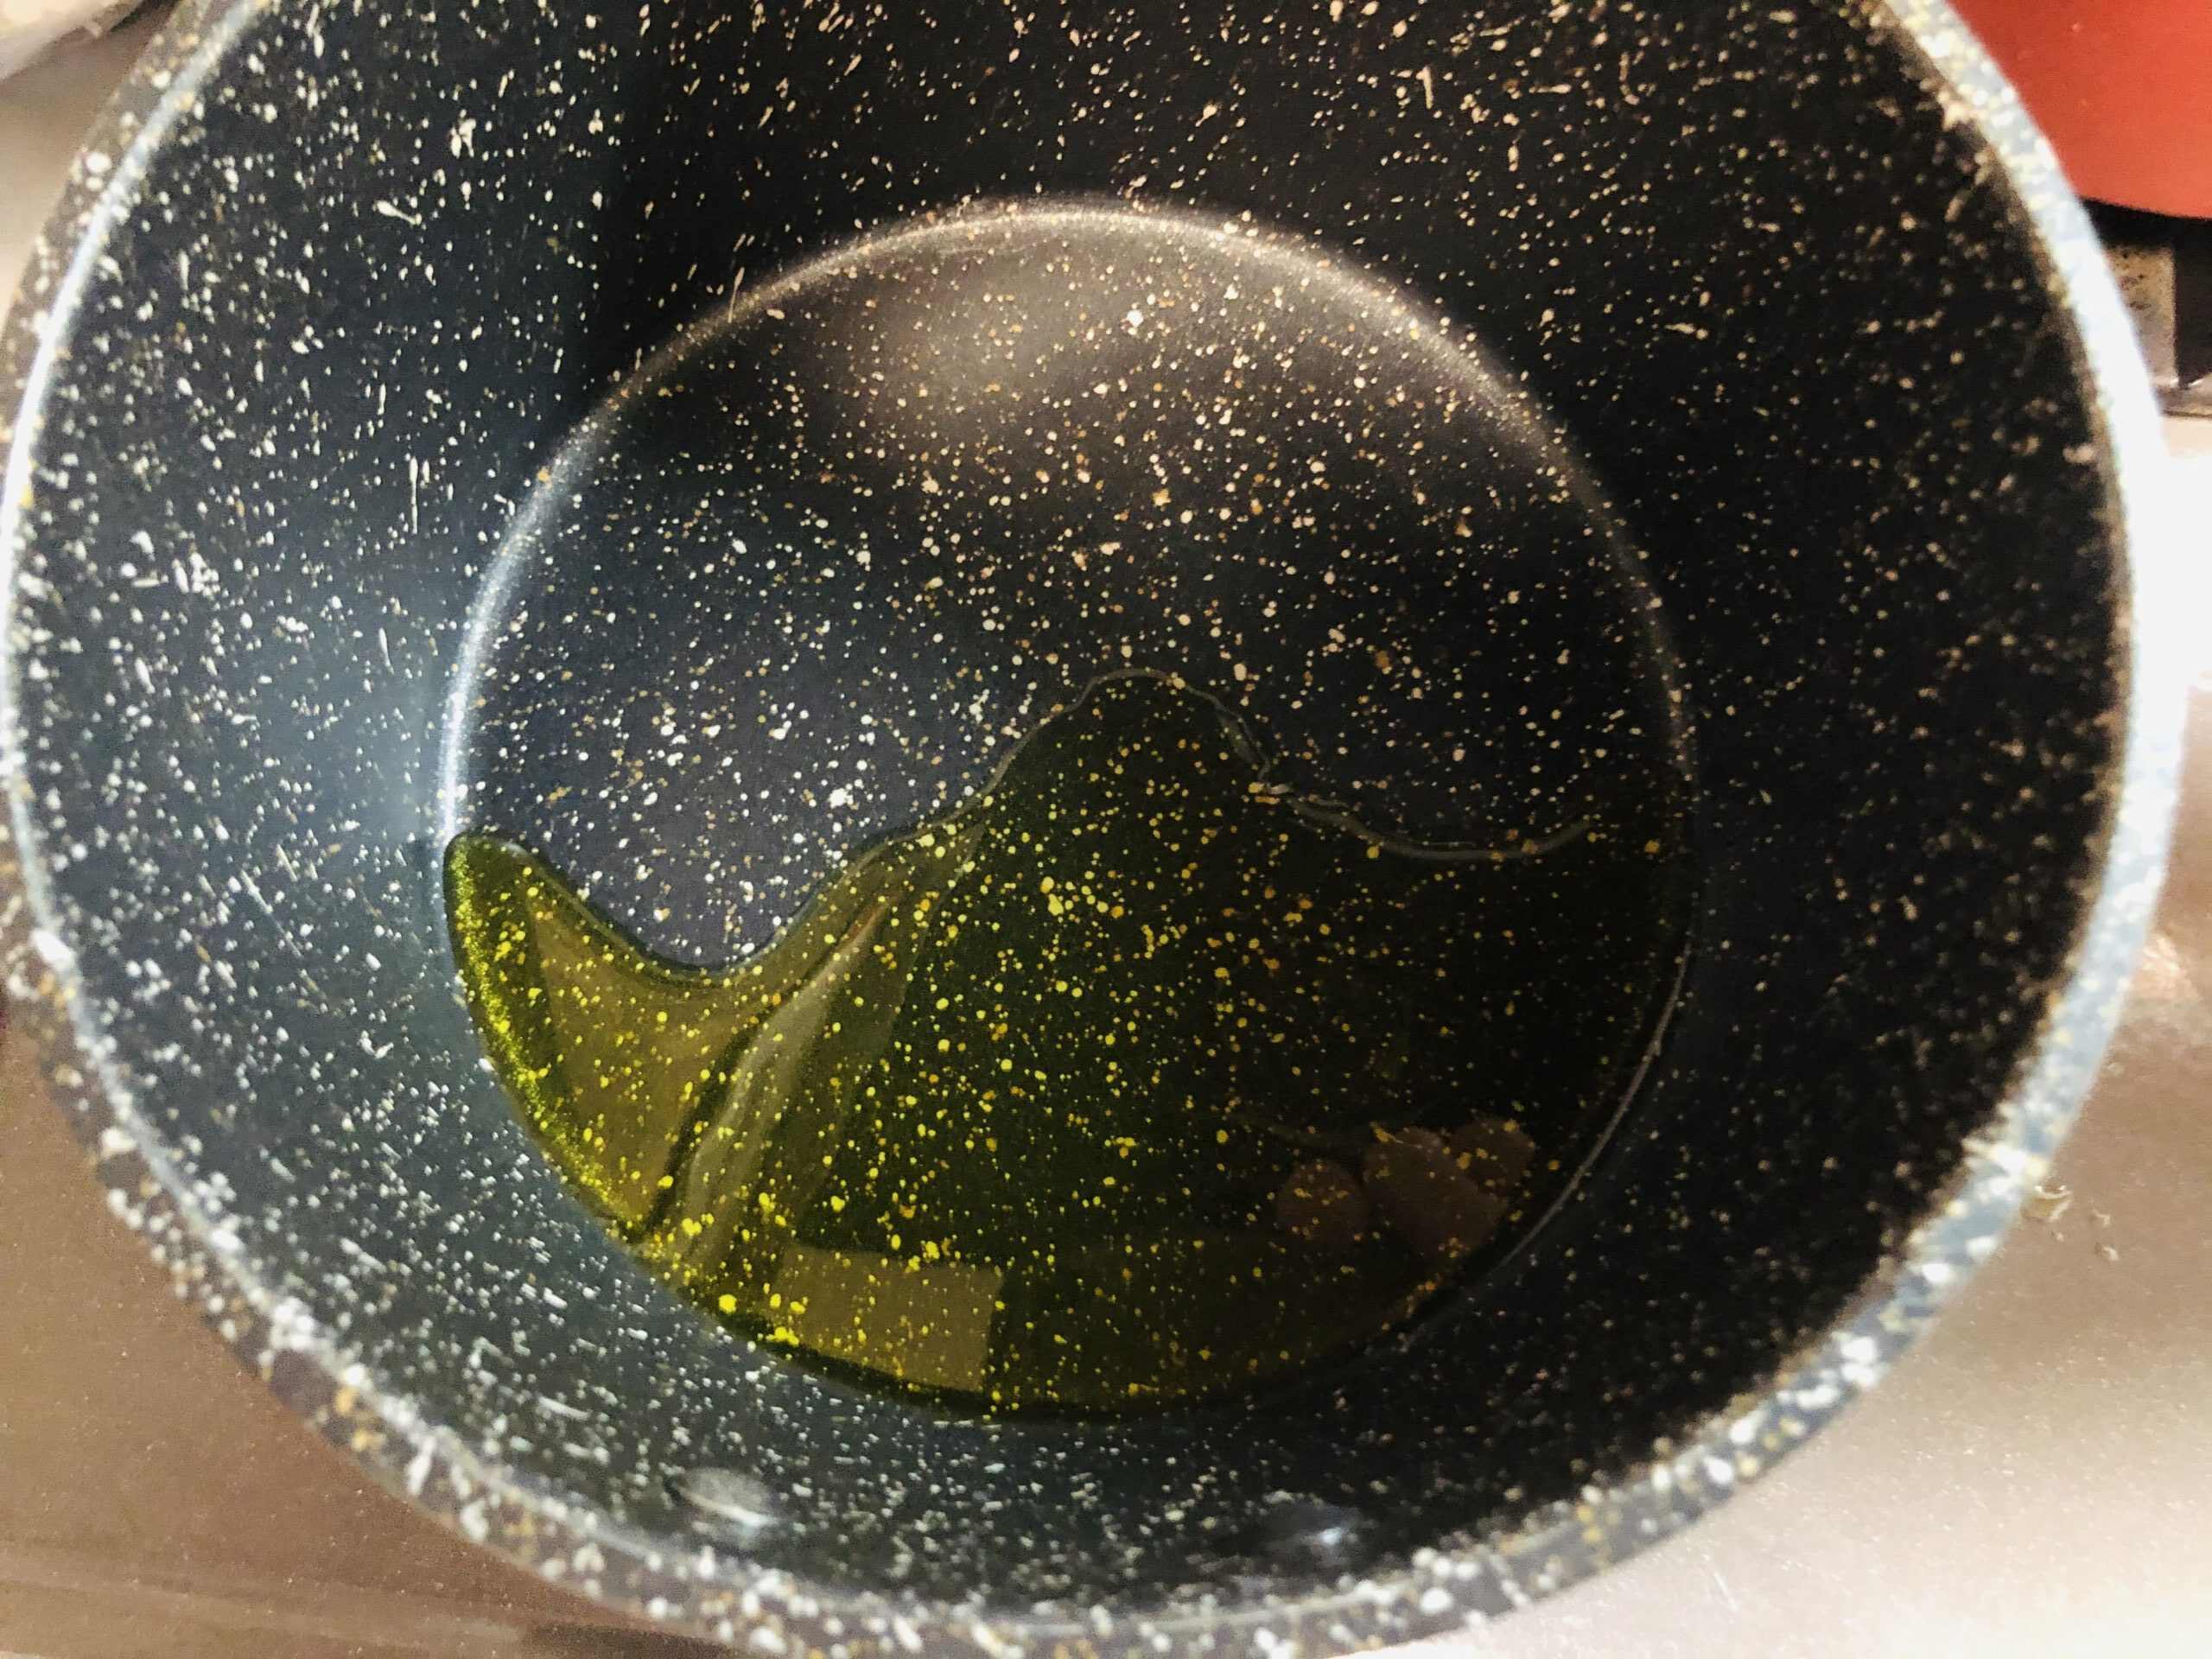 オリーブオイルを入れた小鍋の画像です。